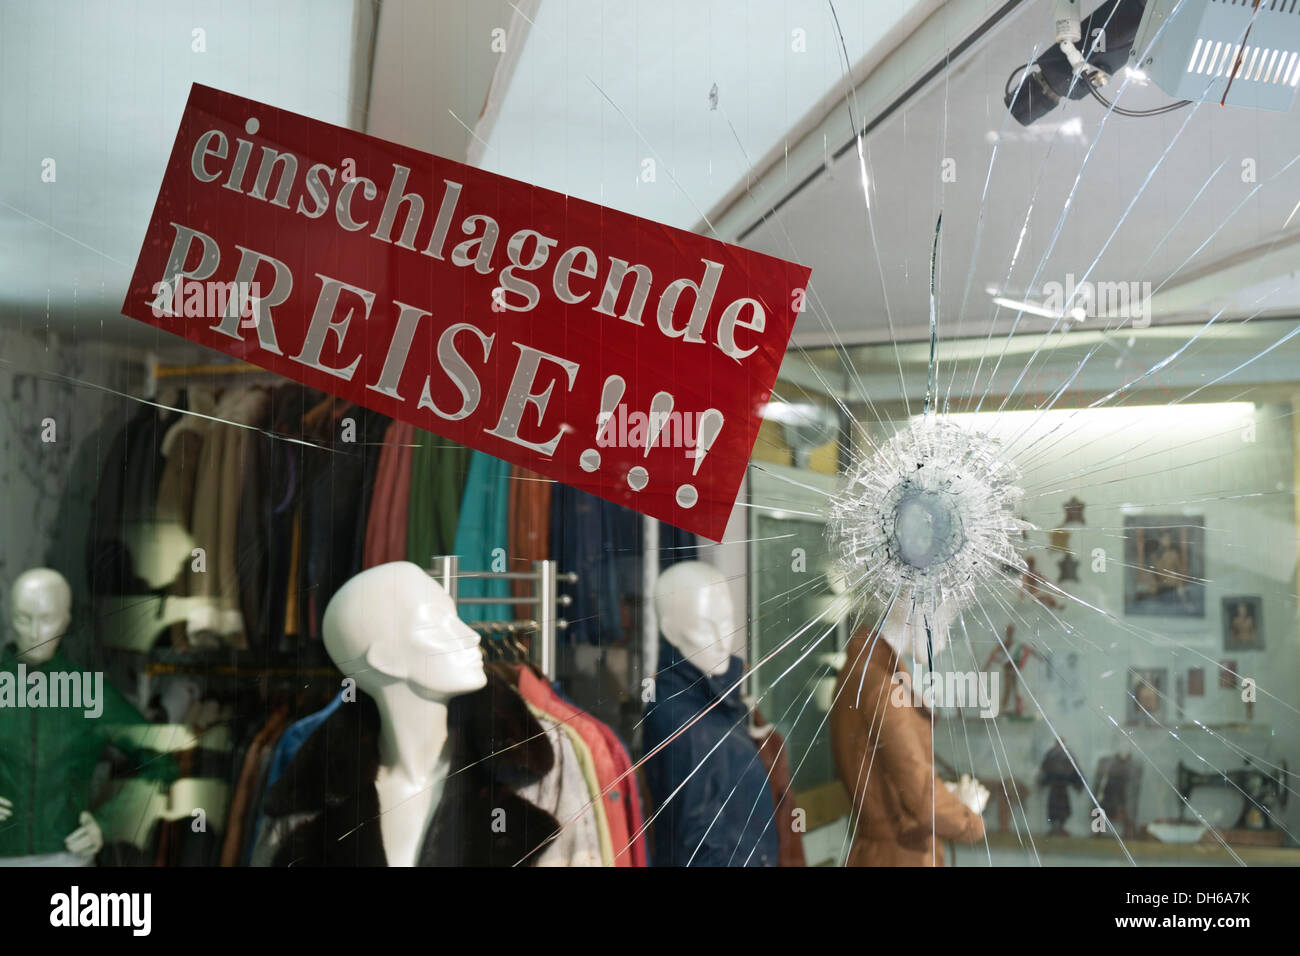 Einschlagende Preise, allemand pour des prix réduits, publicité pour un magasin de mode après la fenêtre de magasin faite de verre de sécurité Banque D'Images